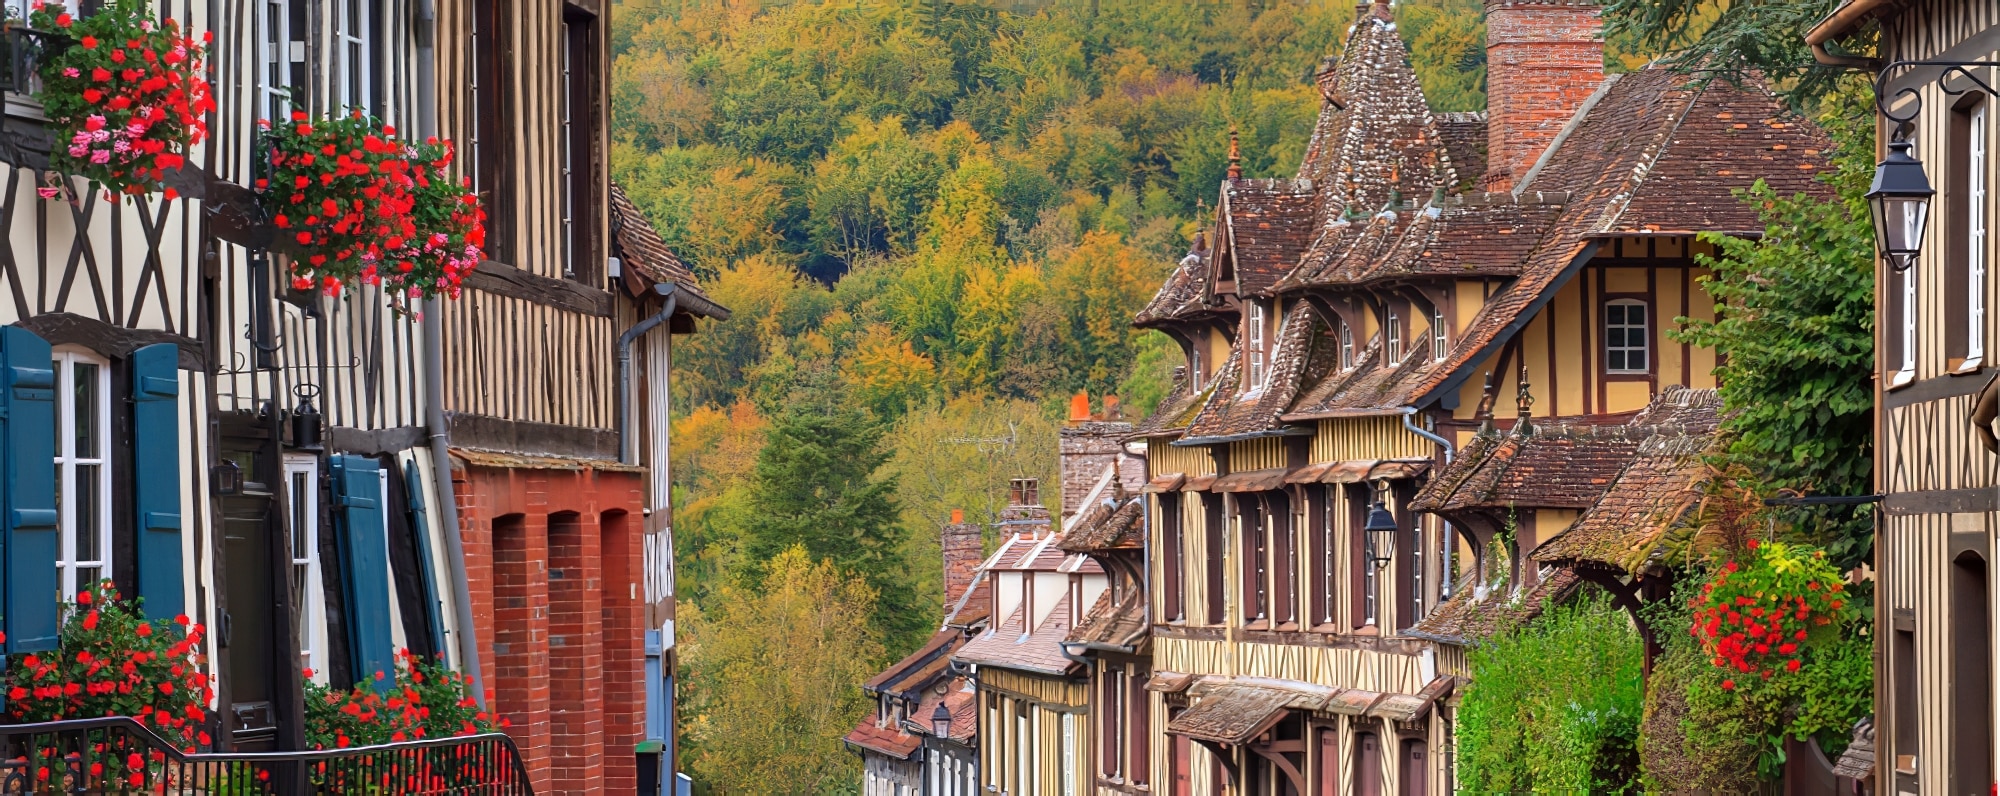 Plus beaux villages de Normandie : Lyons-La-Forêt